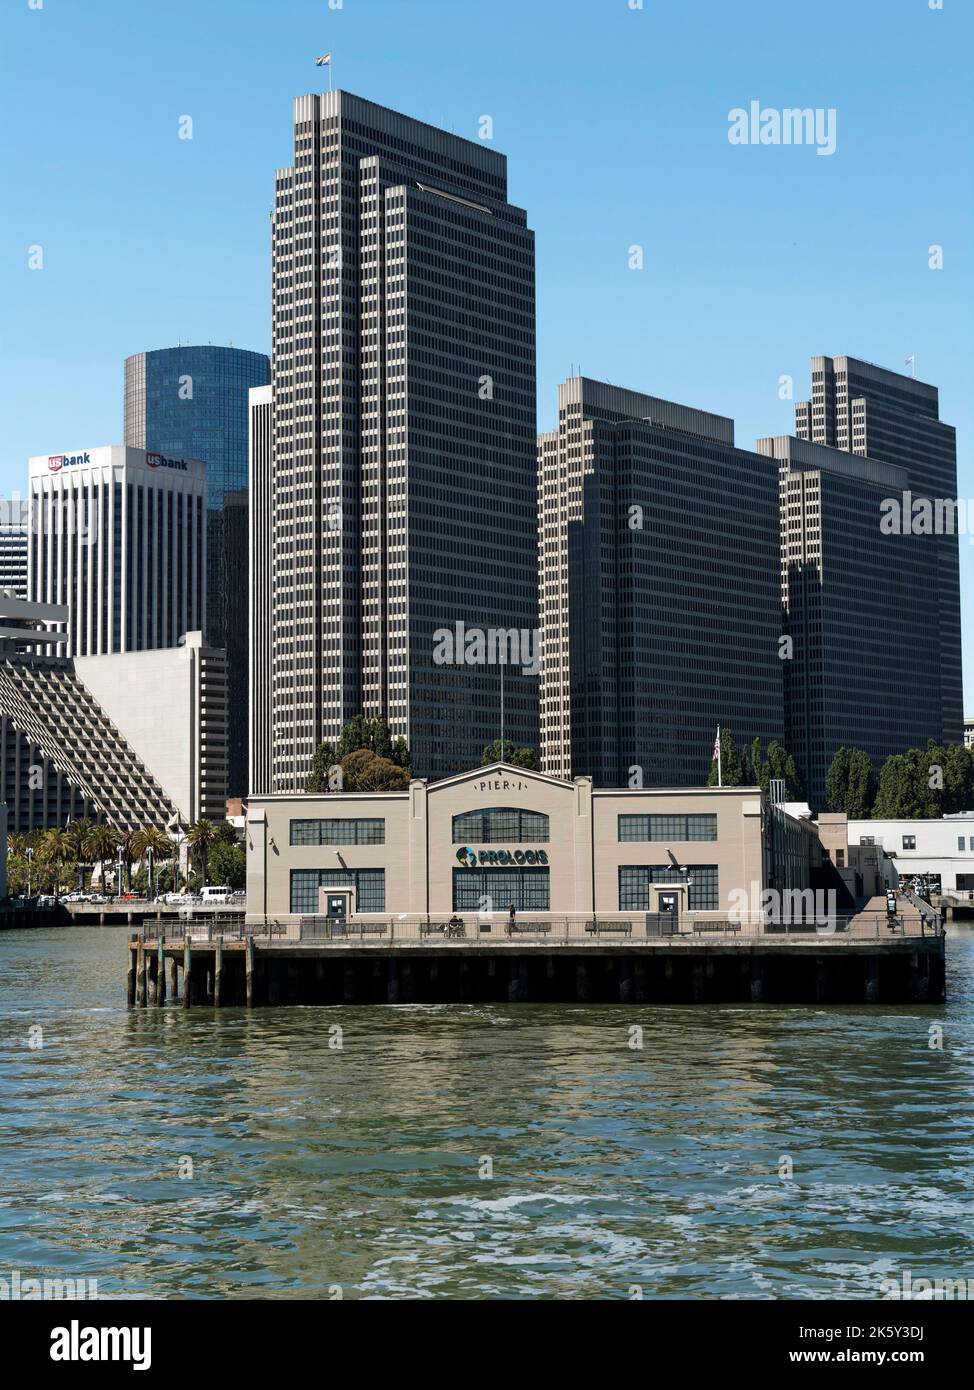 Le front de mer et la ville de San Francisco sont visibles depuis un ferry qui s'approche du terminal des ferries et montre l'embarcadère 1 et le quartier fiancioal derrière. Banque D'Images